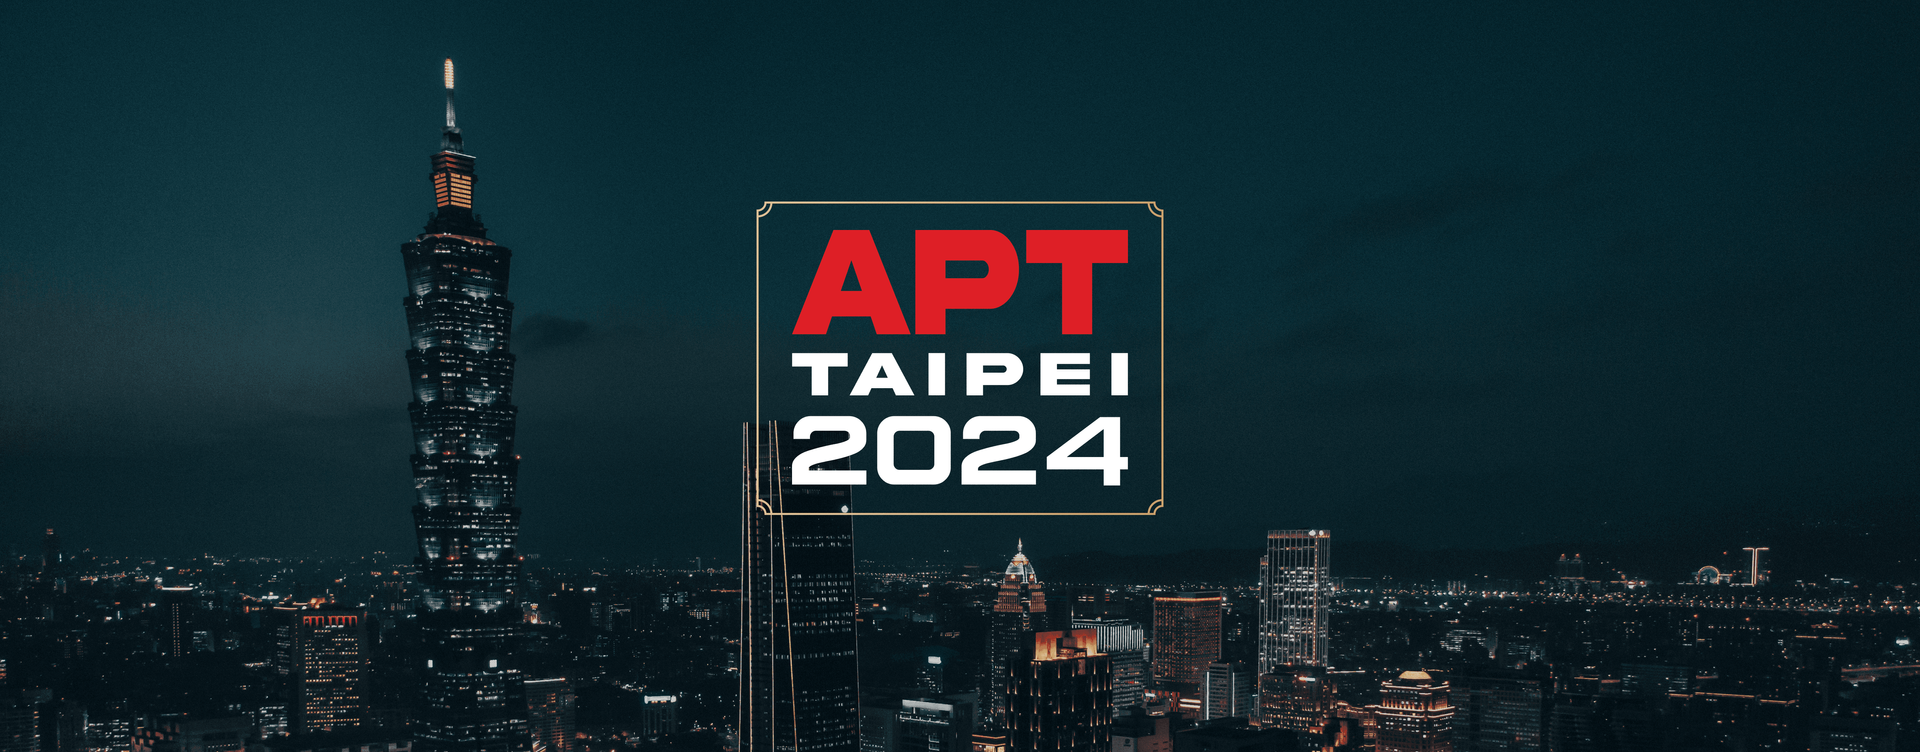 APT Taipei 2024 